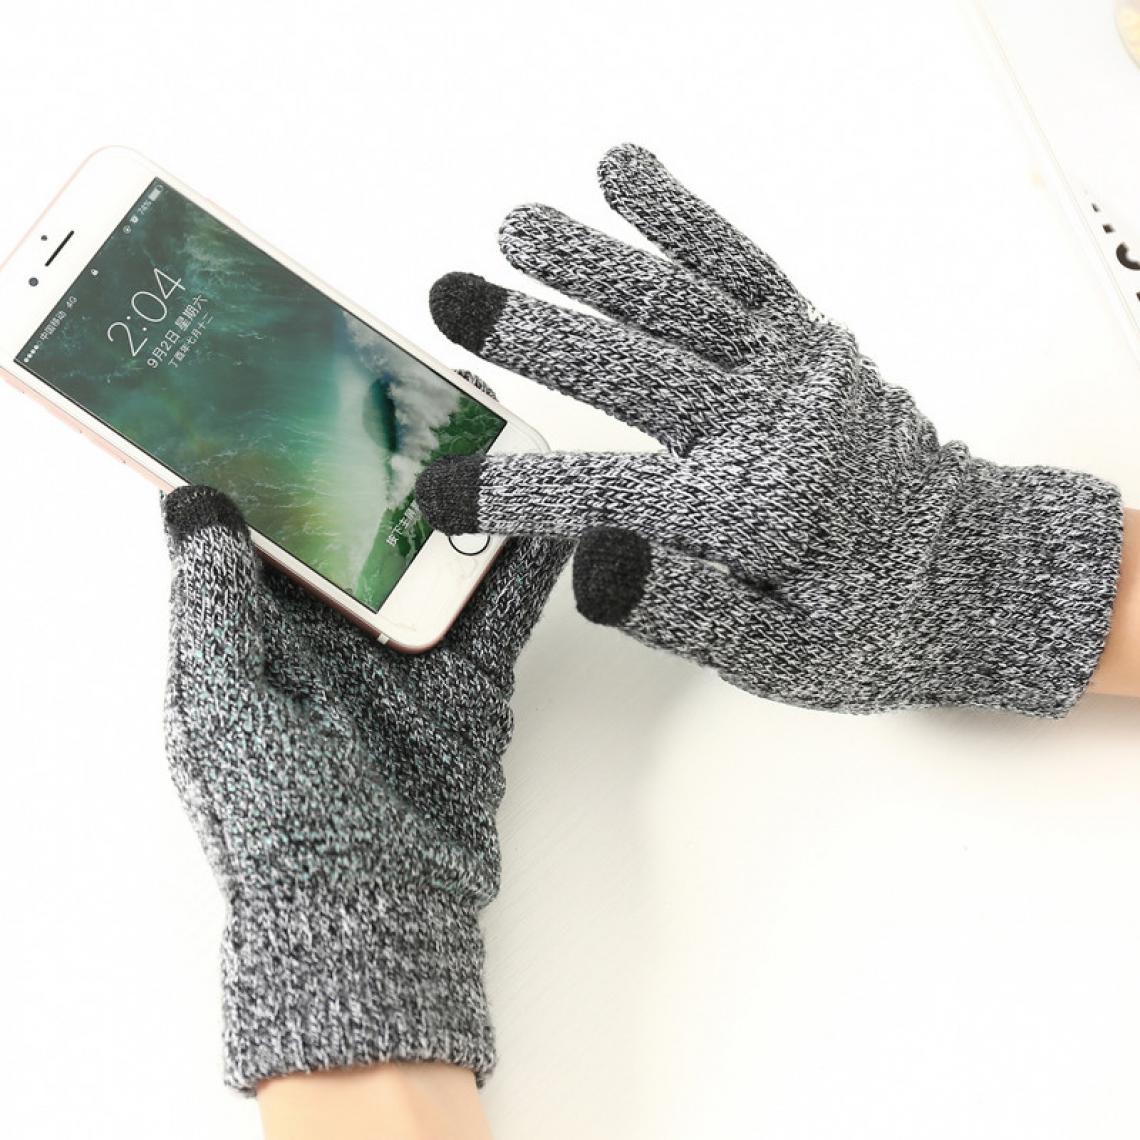 Shot - Gants Homme tactiles pour HONOR 8 Smartphone Taille M 3 doigts Hiver (NOIR) - Autres accessoires smartphone